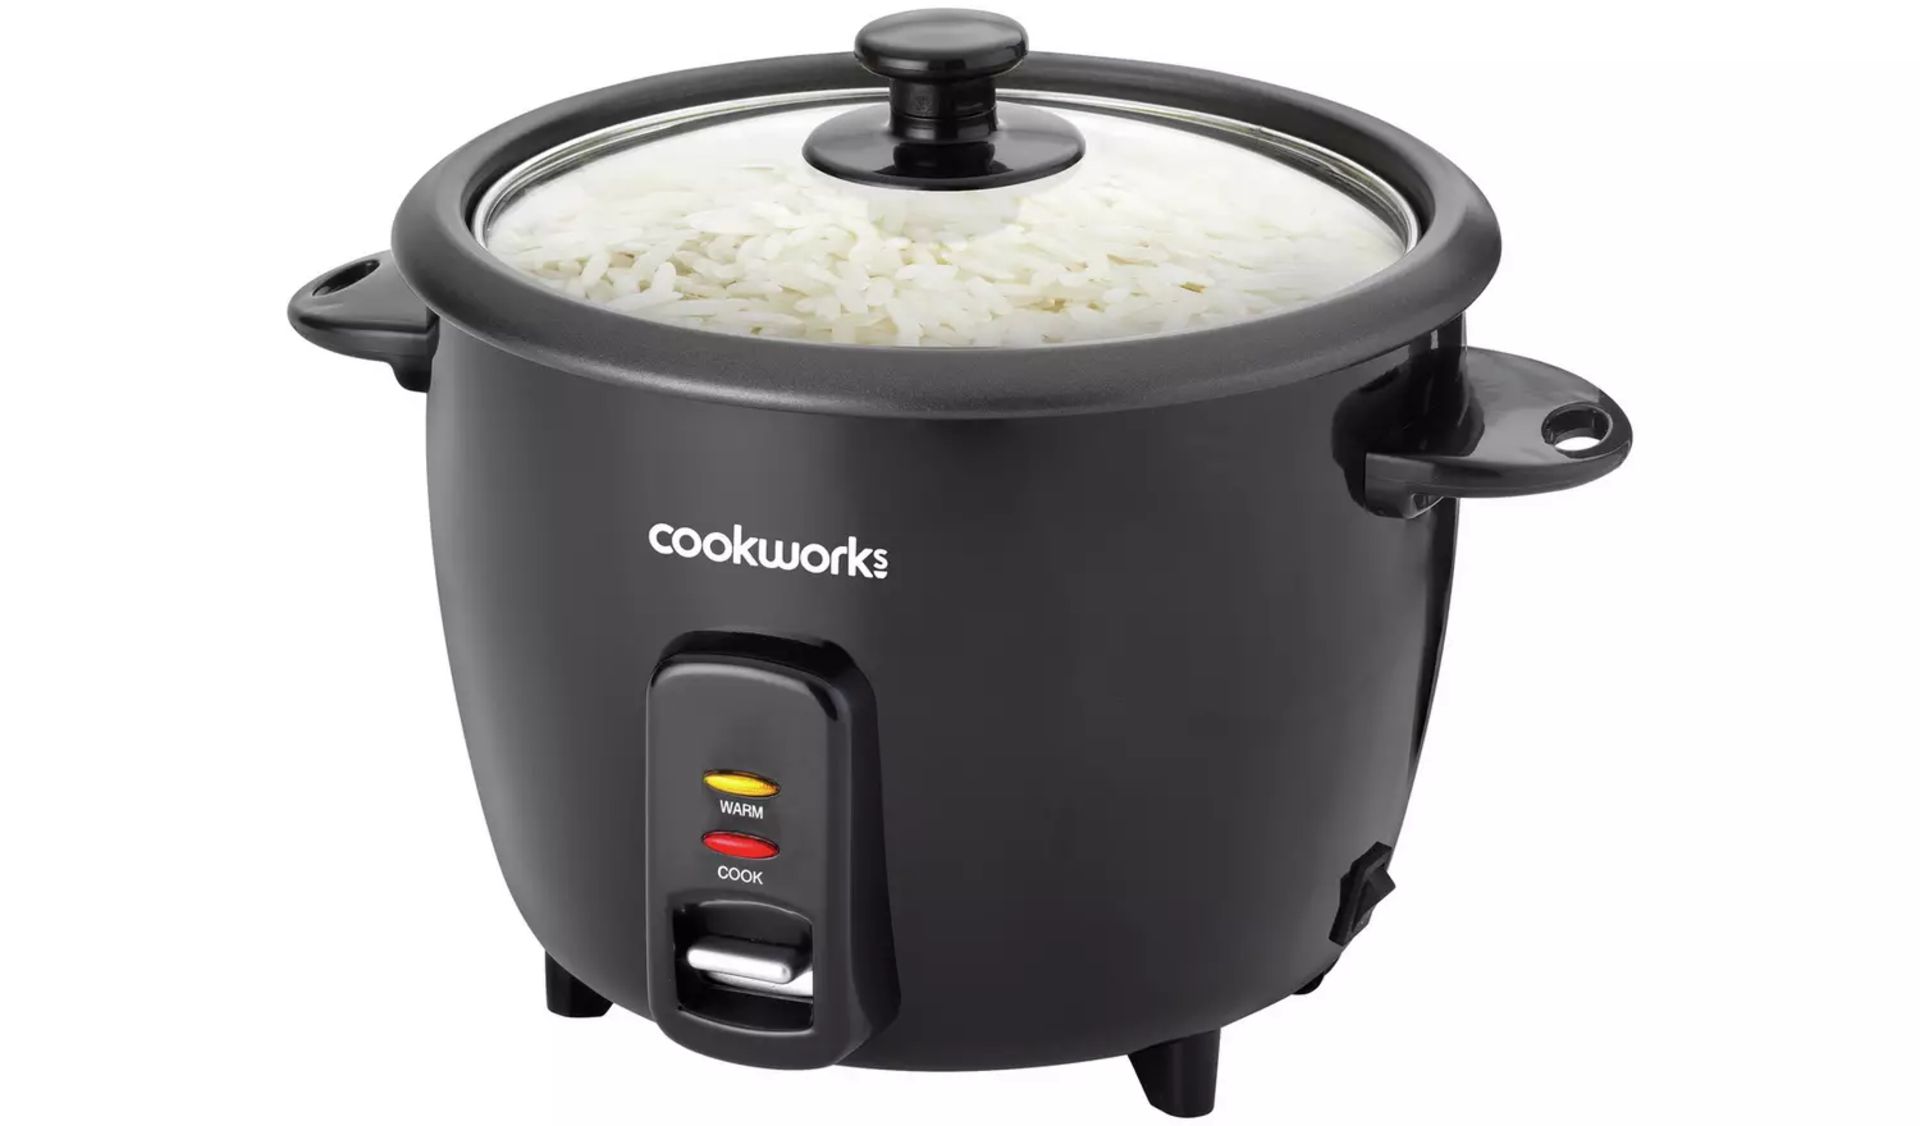 Cookworks 1.5L Rice Cooker - Black